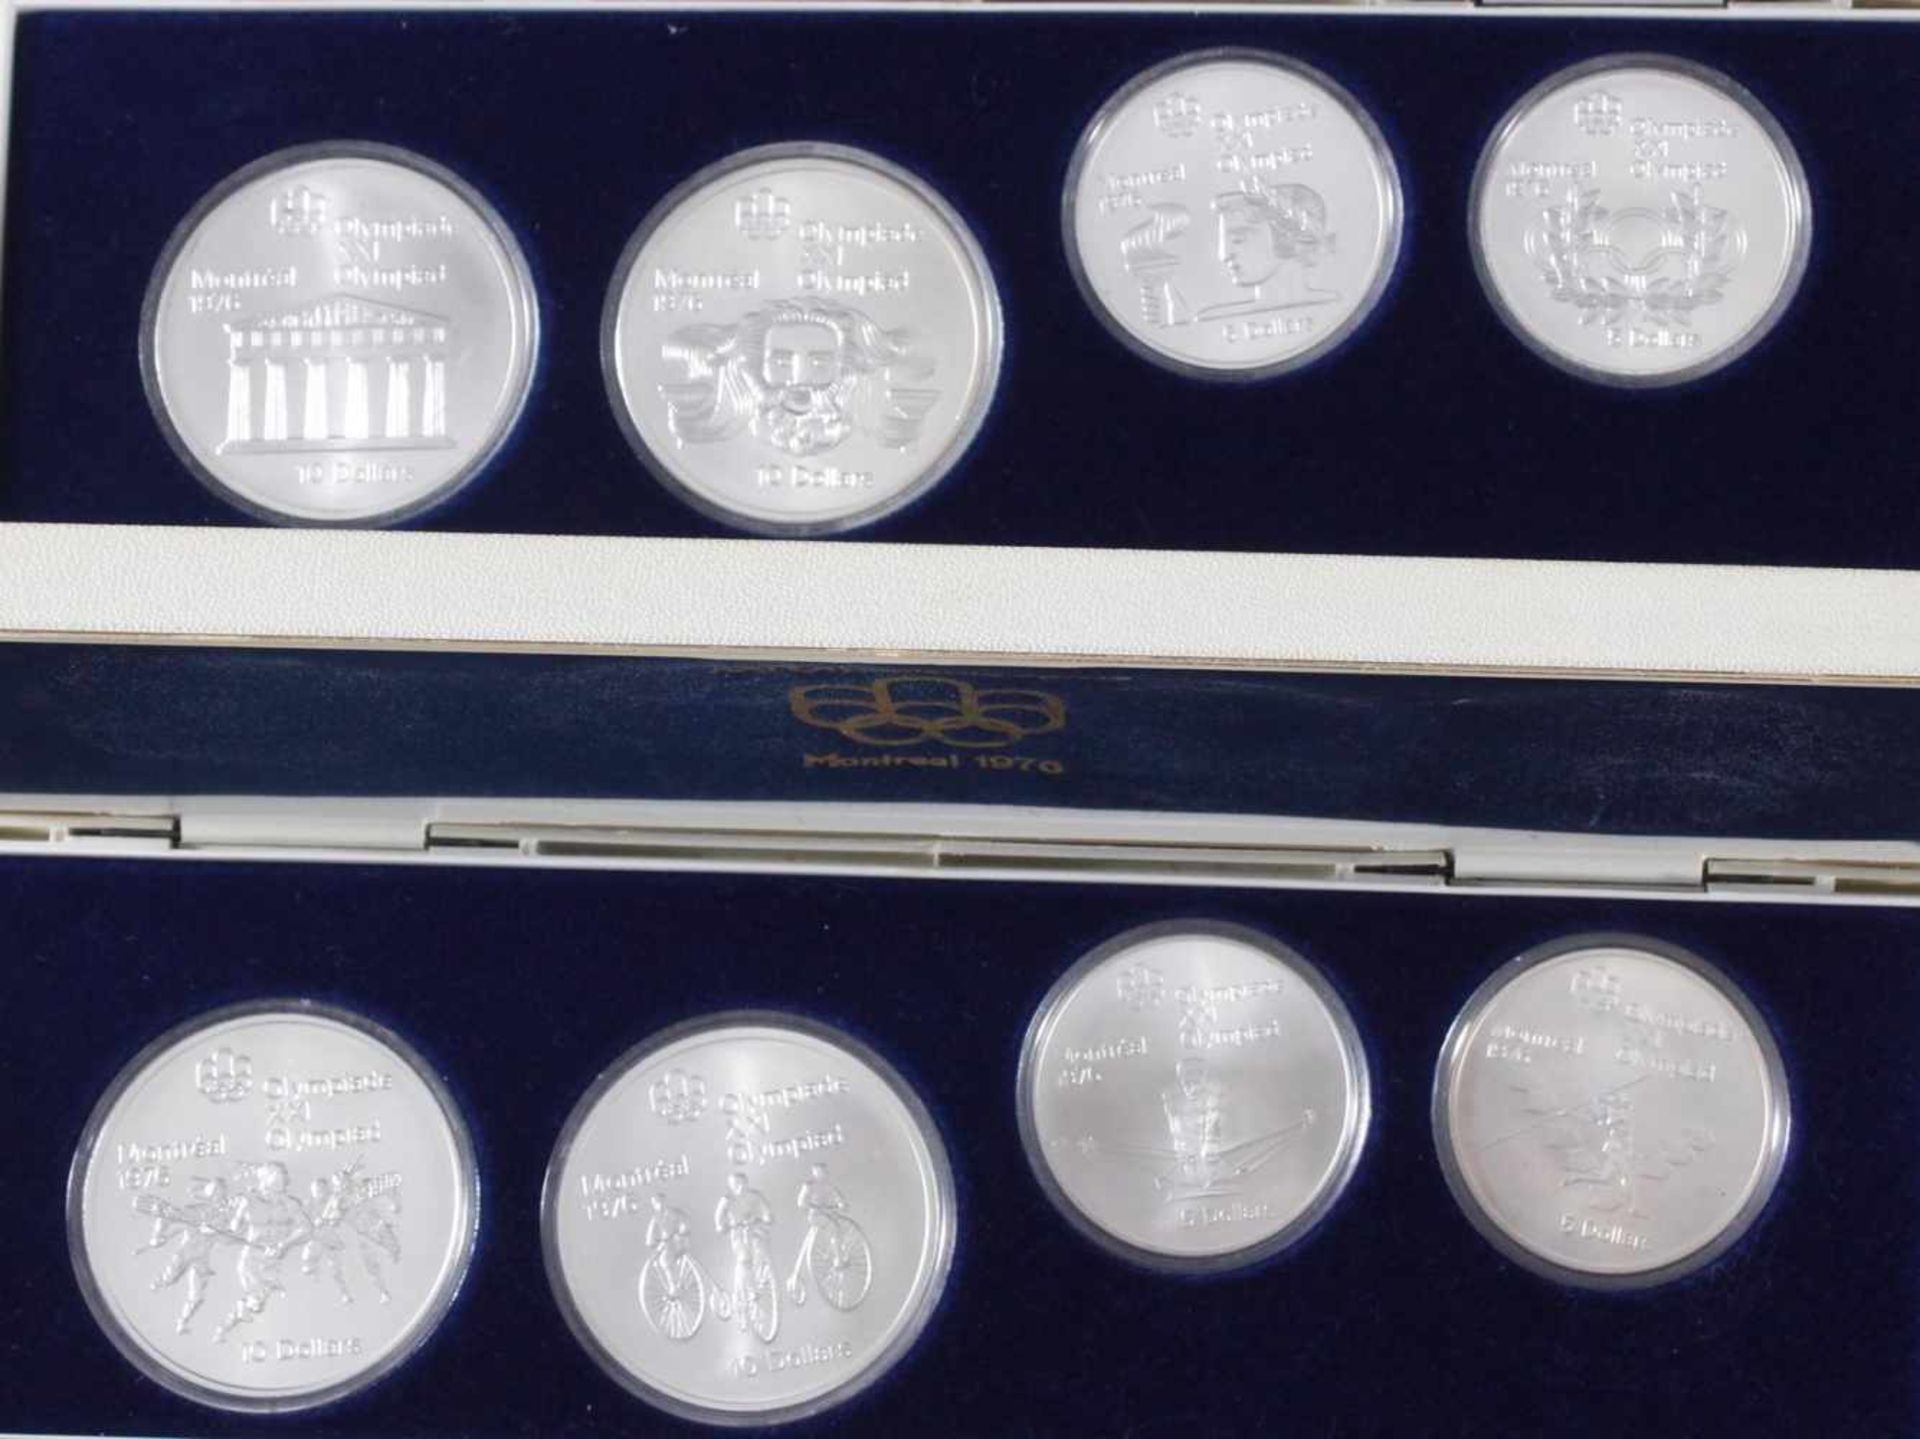 28x Silbermünzen Montreal 1976, kompletter Satz< - Bild 2 aus 5